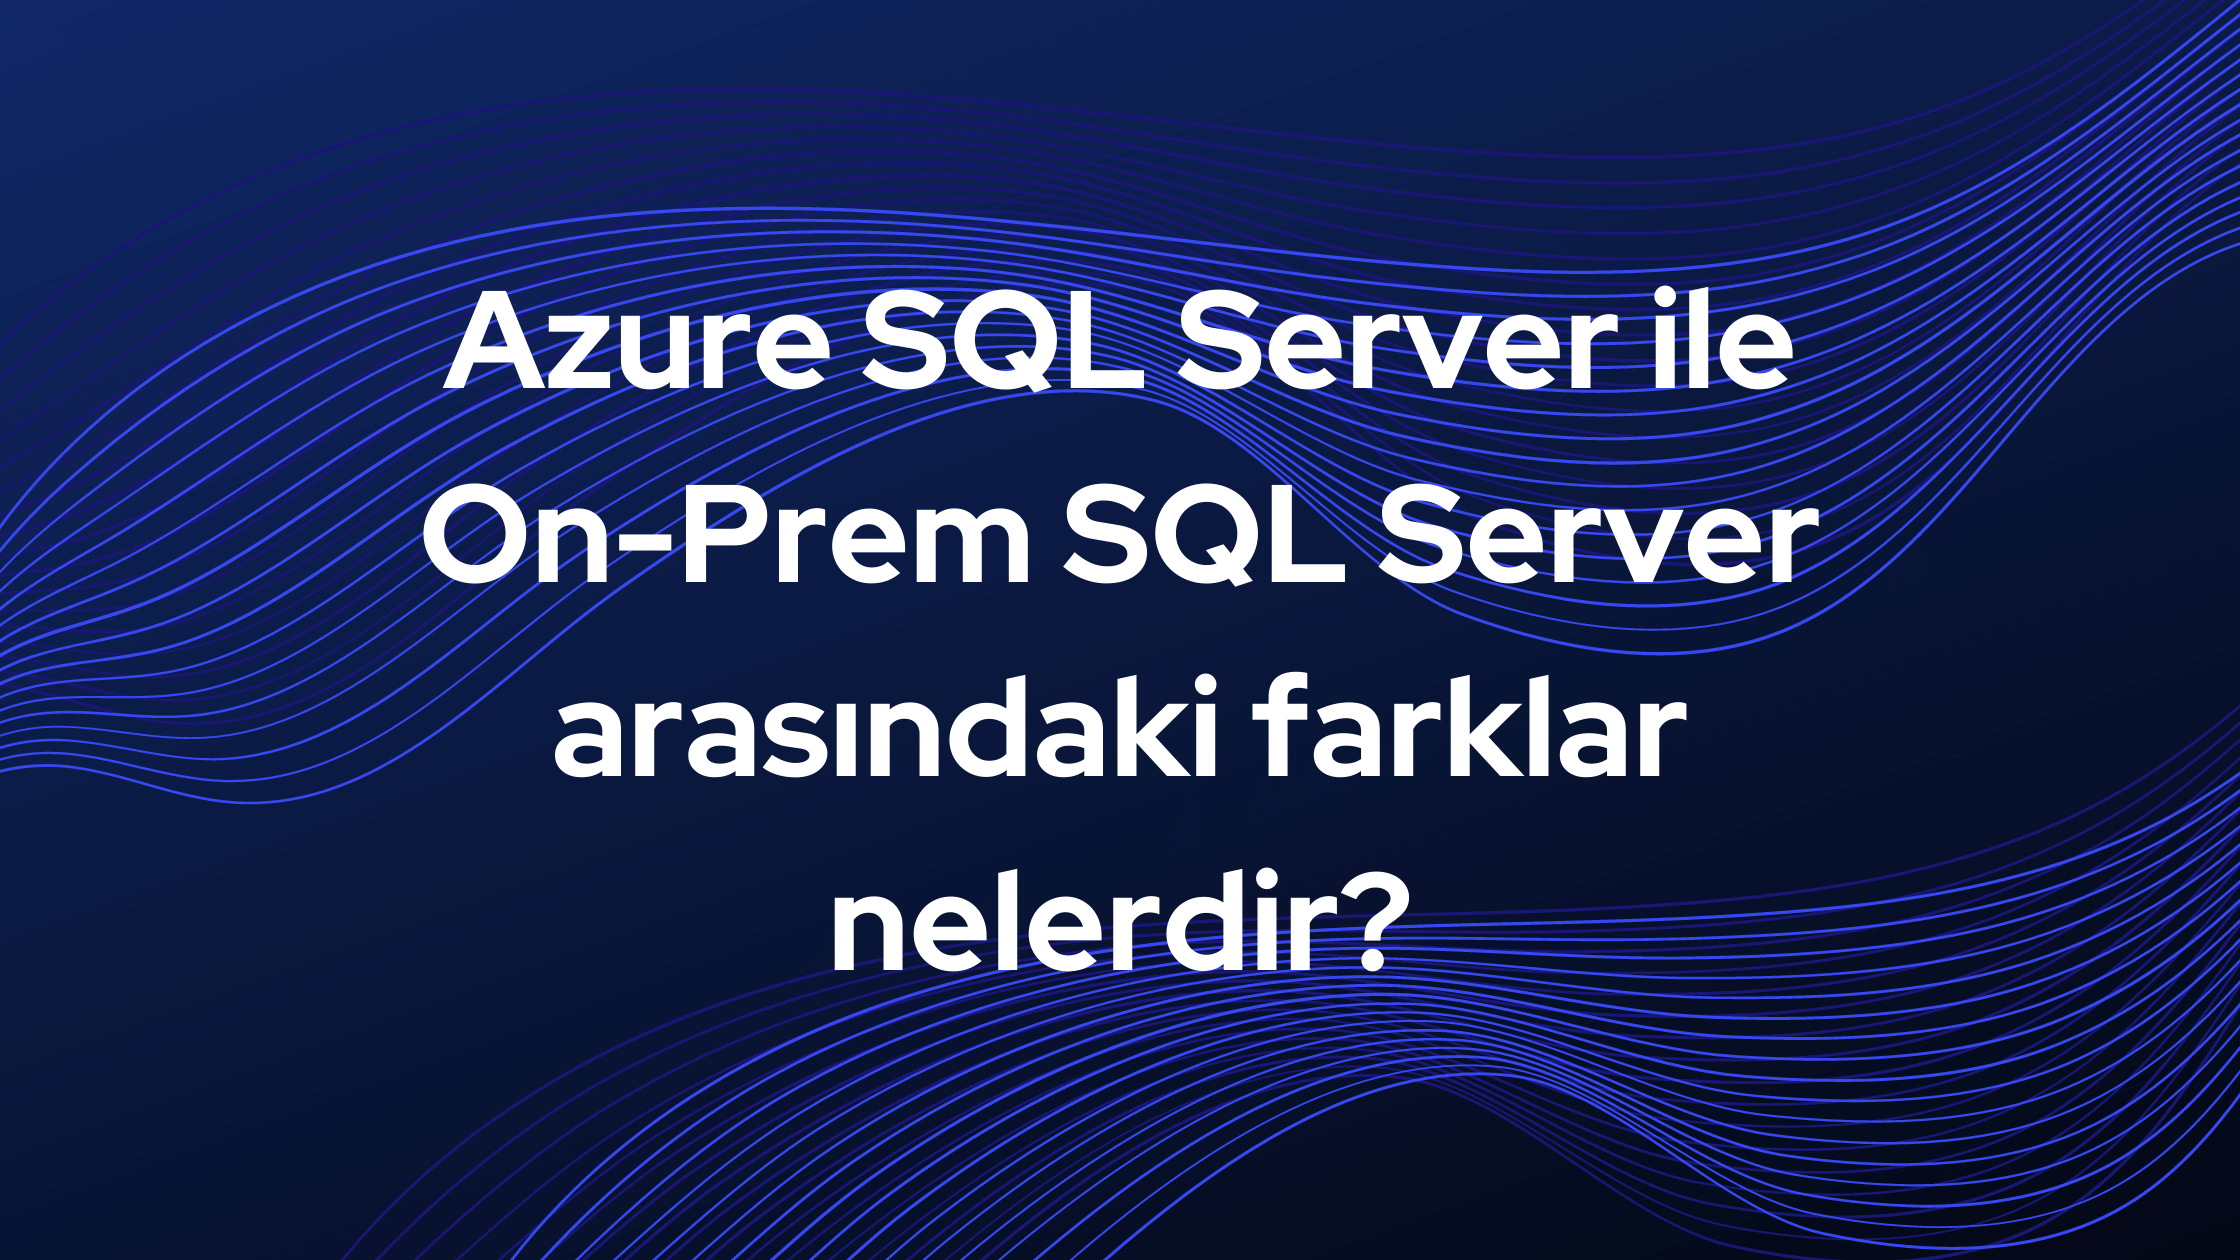 Azure SQL Server ile On-Prem SQL Server arasındaki farklar nelerdir